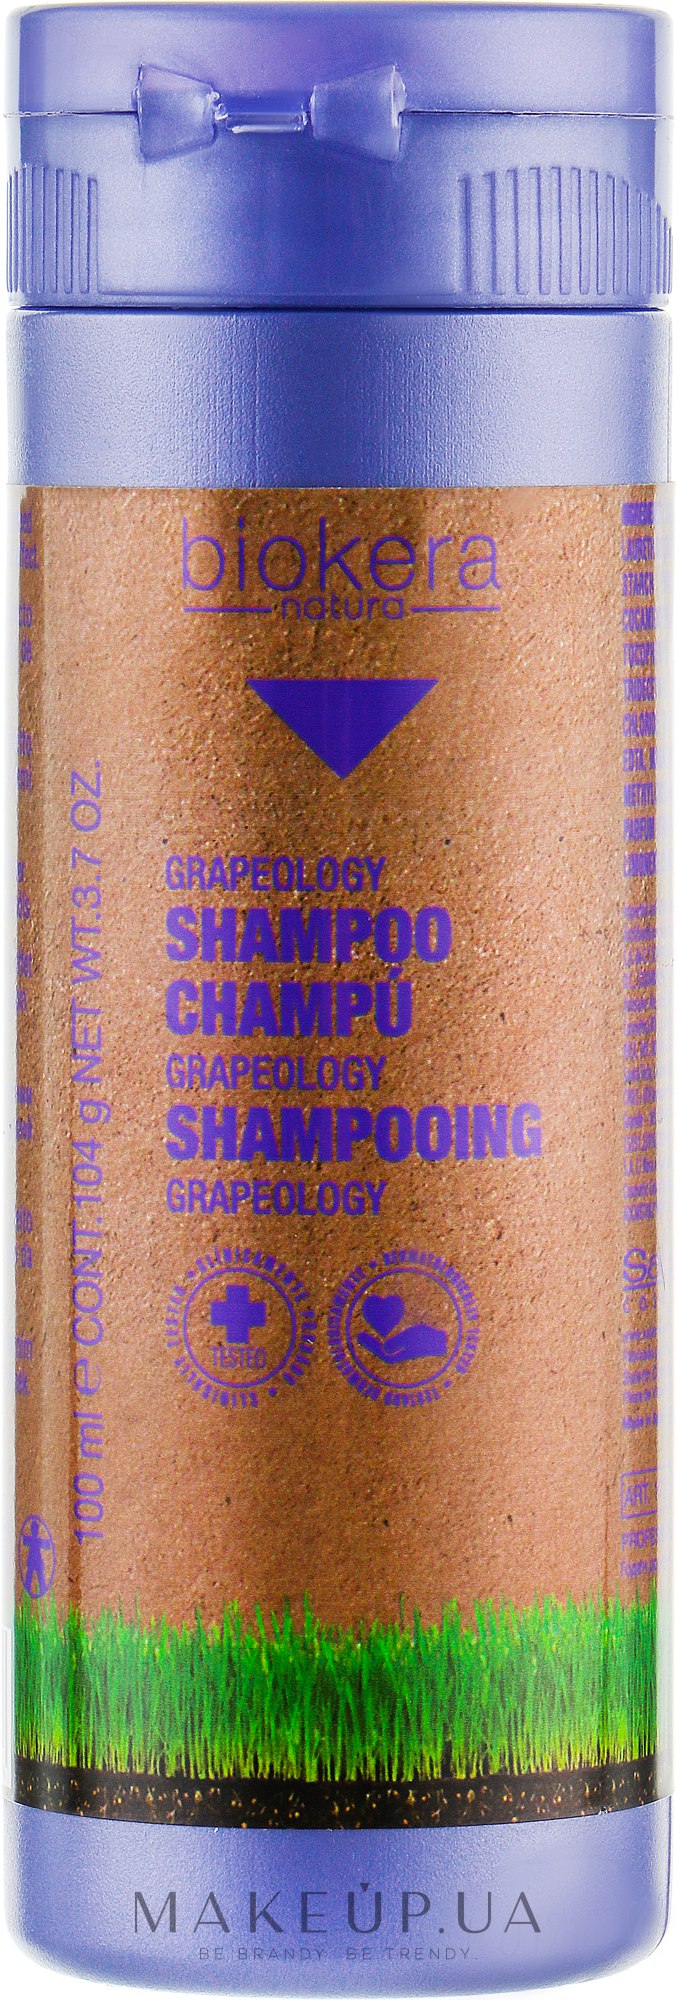 Salerm Biokera Grapeology Shampoo - Шампунь с маслом виноградной косточки:  купить по лучшей цене в Украине 